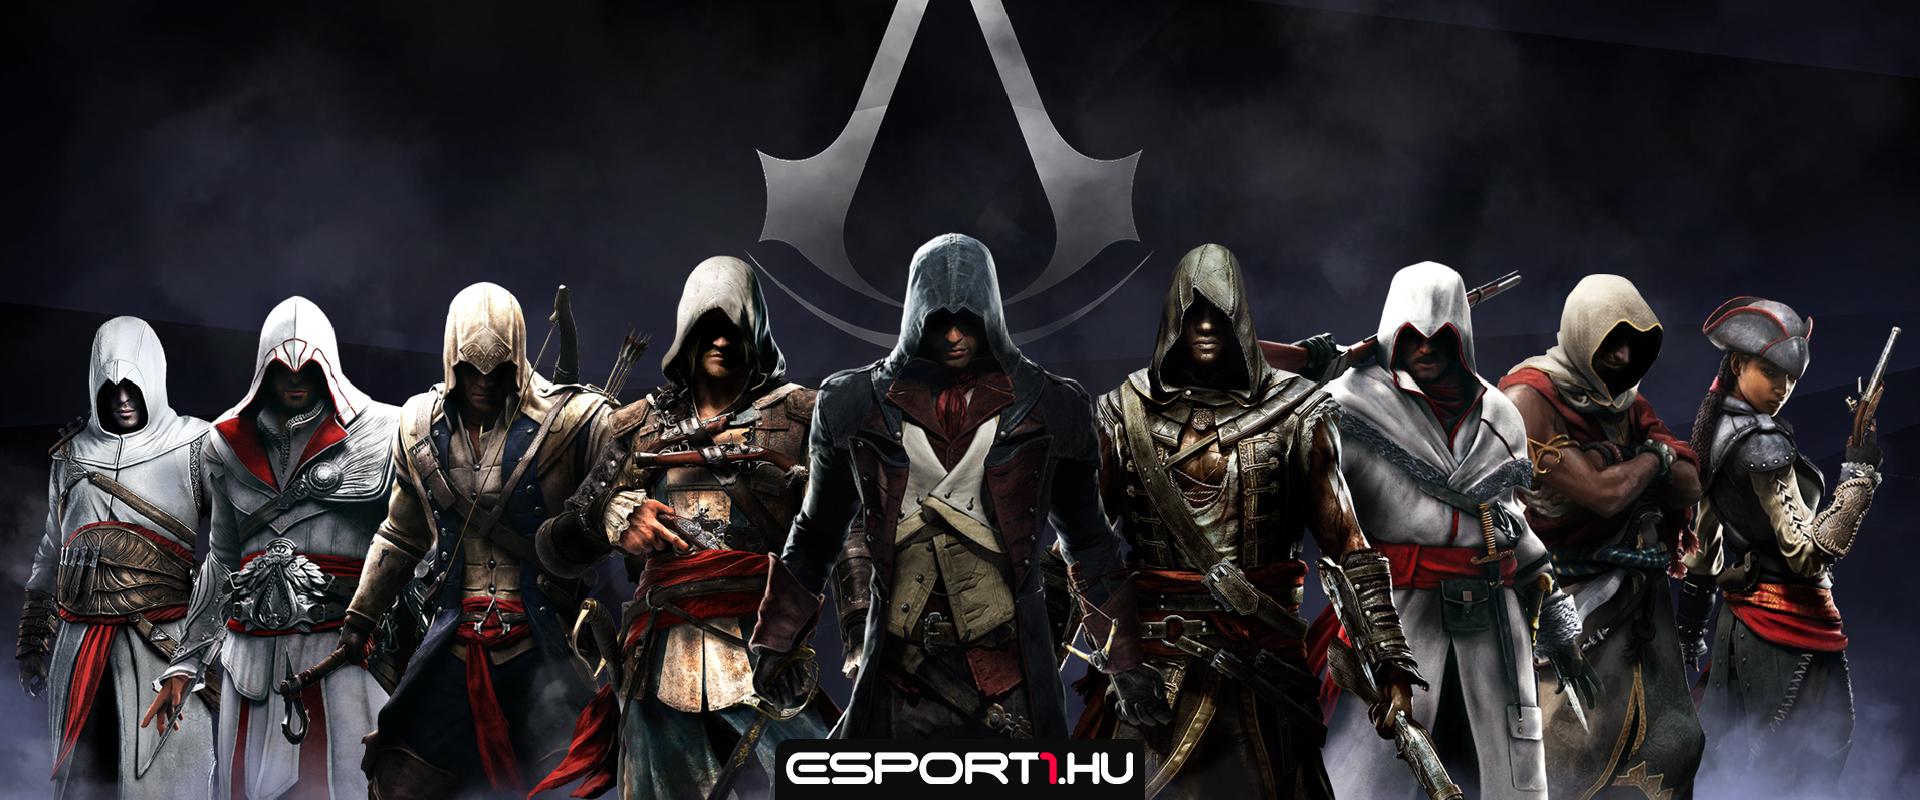 Kiszivároghatott a következő Assassin's Creed játék címe és koncepciója